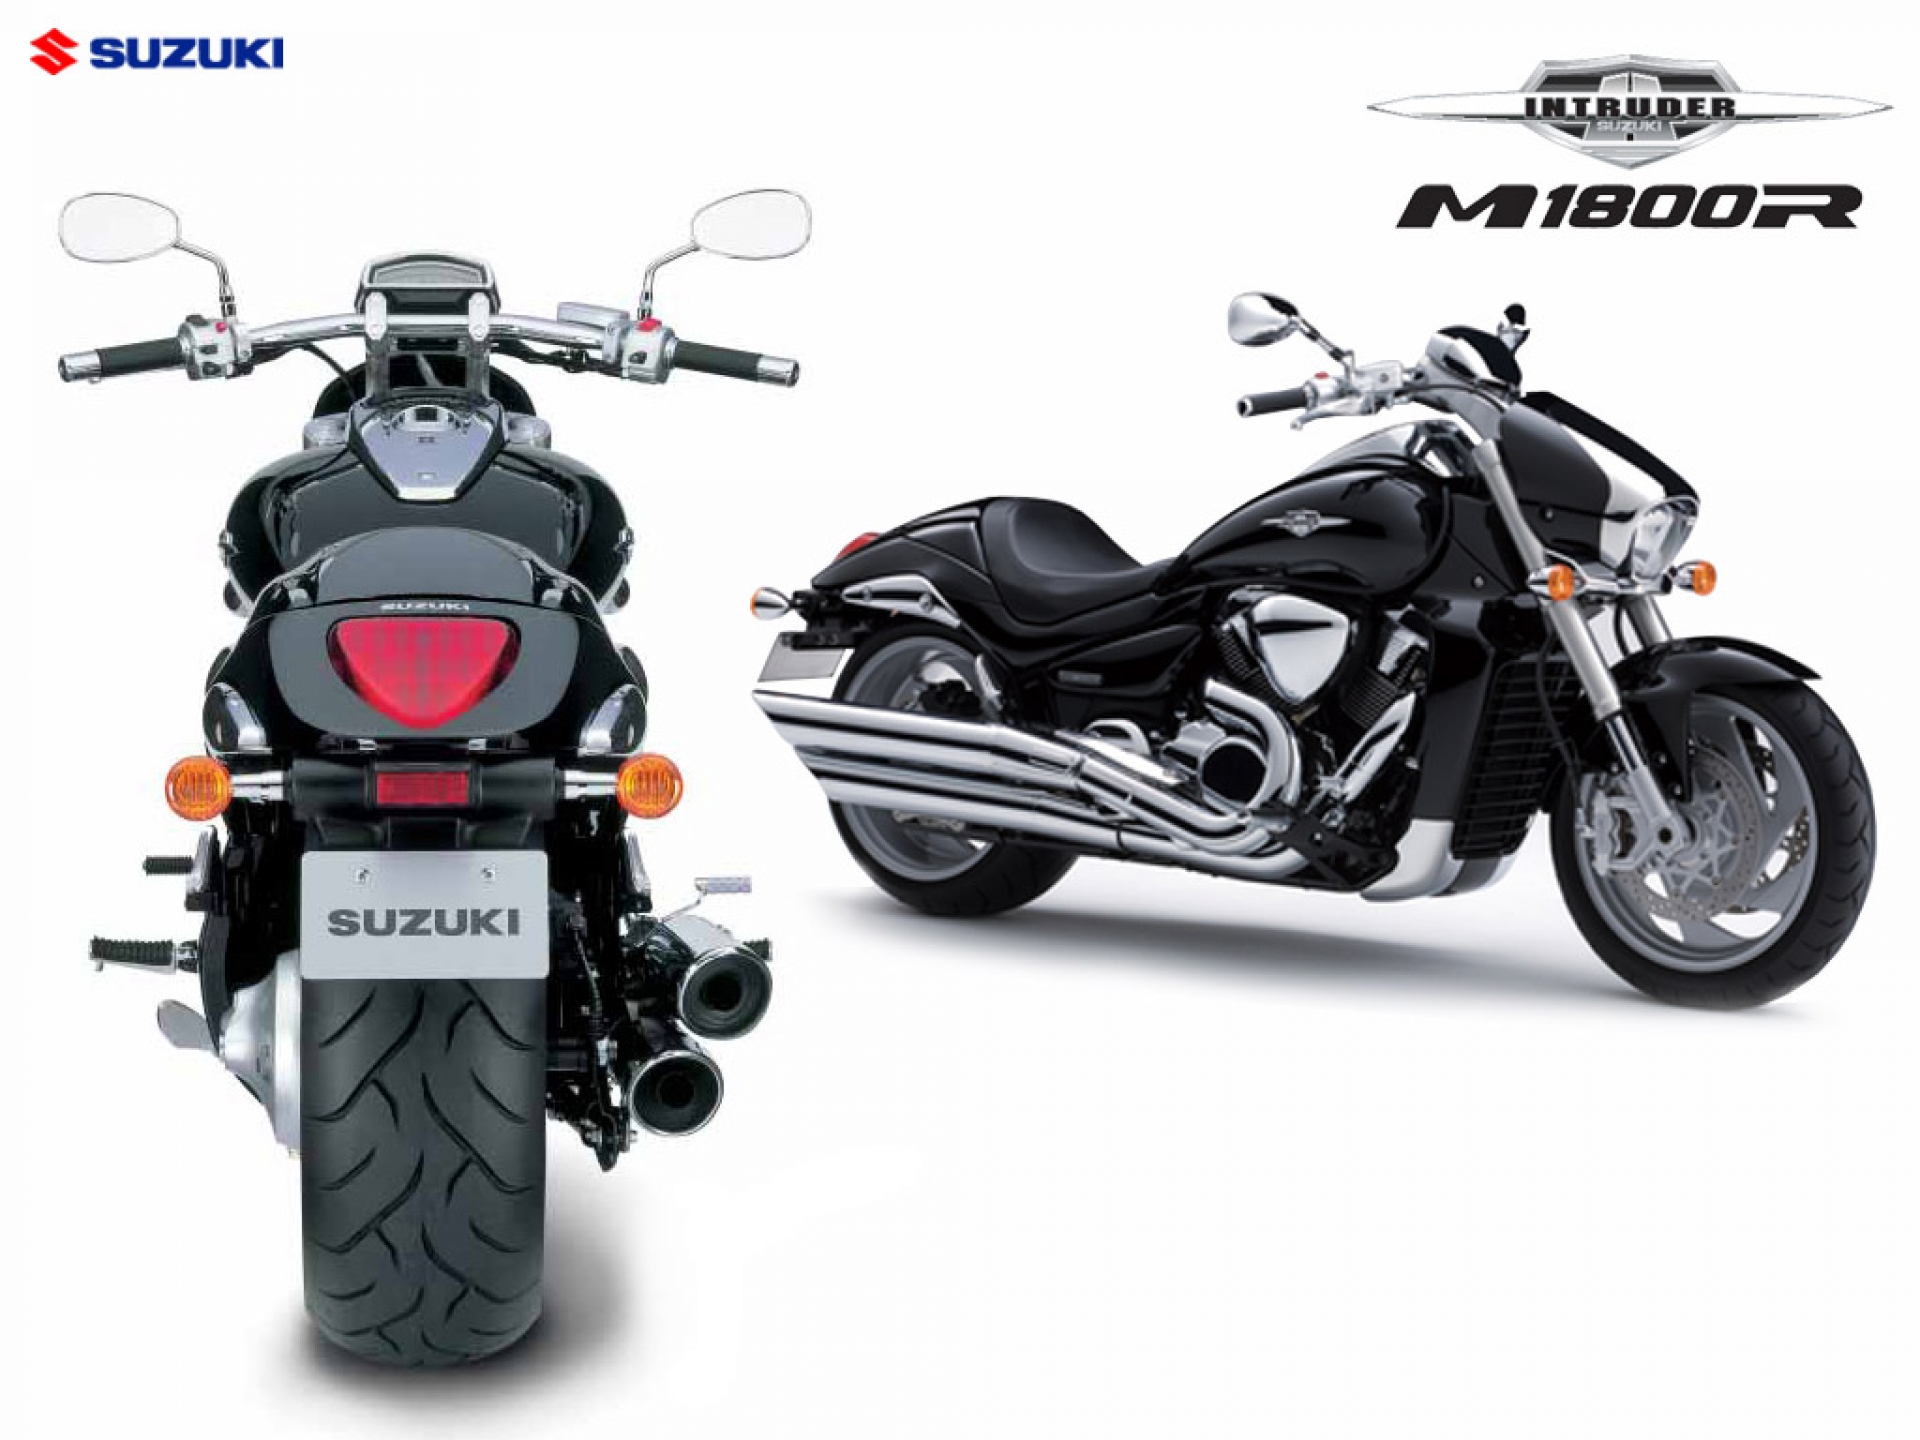 Motocycles_New_bike_Suzuki_Intruder_M1800_R__072428_.jpg